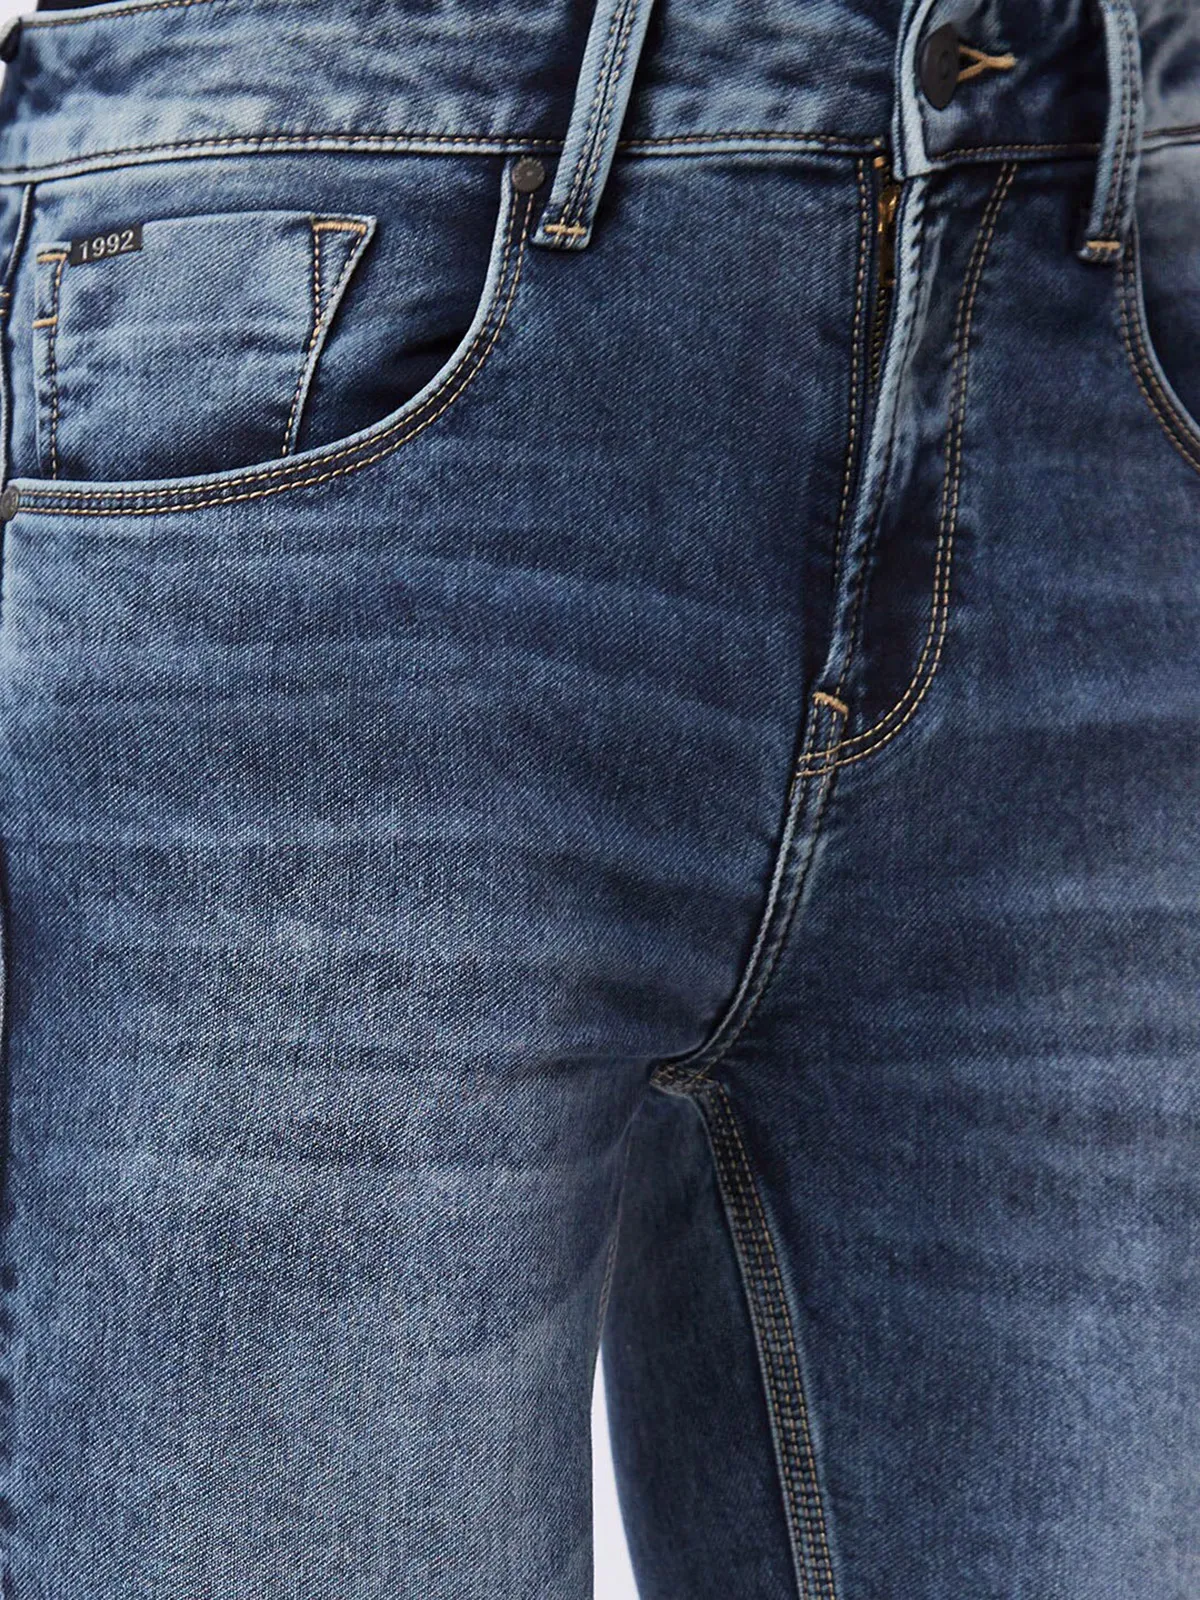 SPYKAR stone grey washed skinny fit jeans